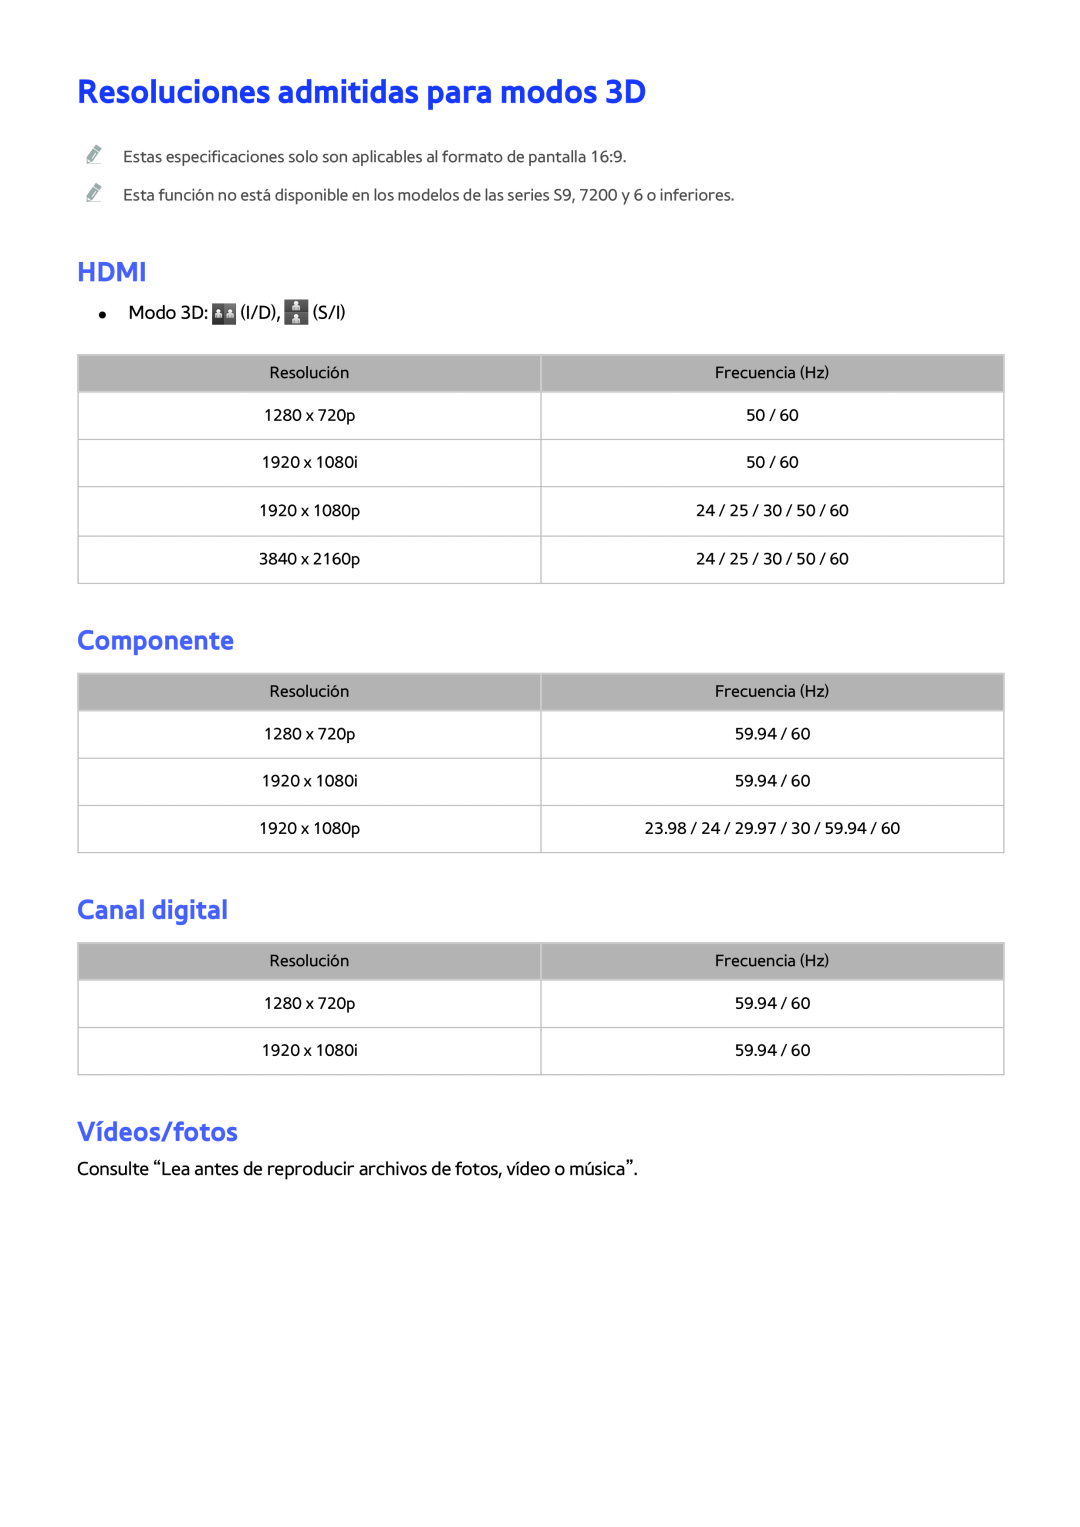 Samsung UE55JU6400KXXC, UE50JU6800KXXC Resoluciones admitidas para modos 3D, Hdmi, Componente, Canal digital, Vídeos/fotos 